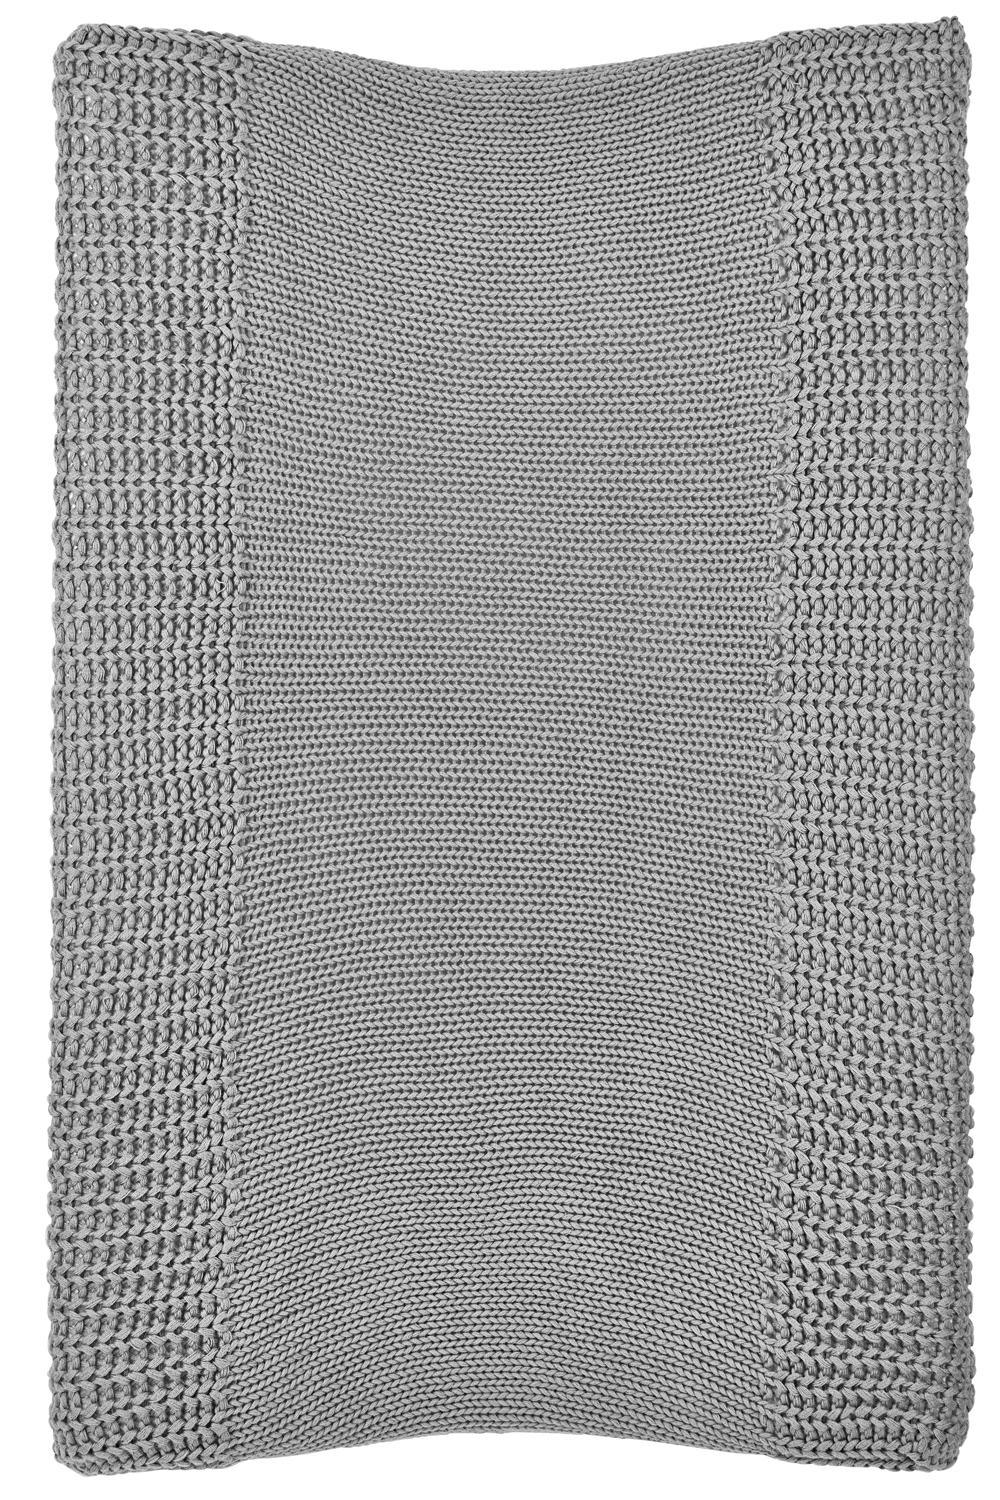 Wickelauflagenbezug Herringbone - grey - 50x70cm